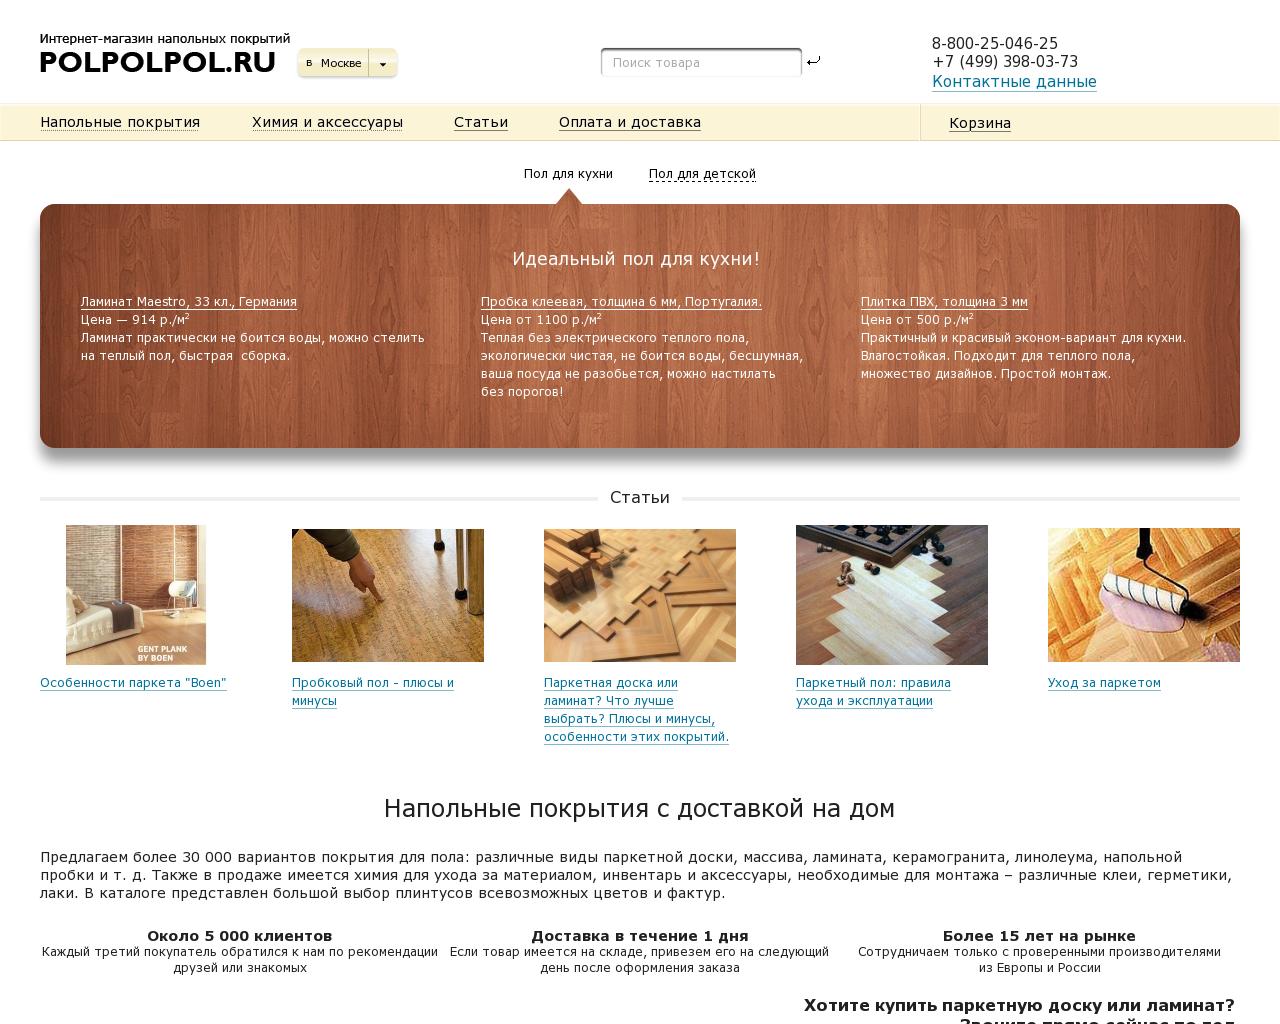 Изображение сайта polpolpol.ru в разрешении 1280x1024